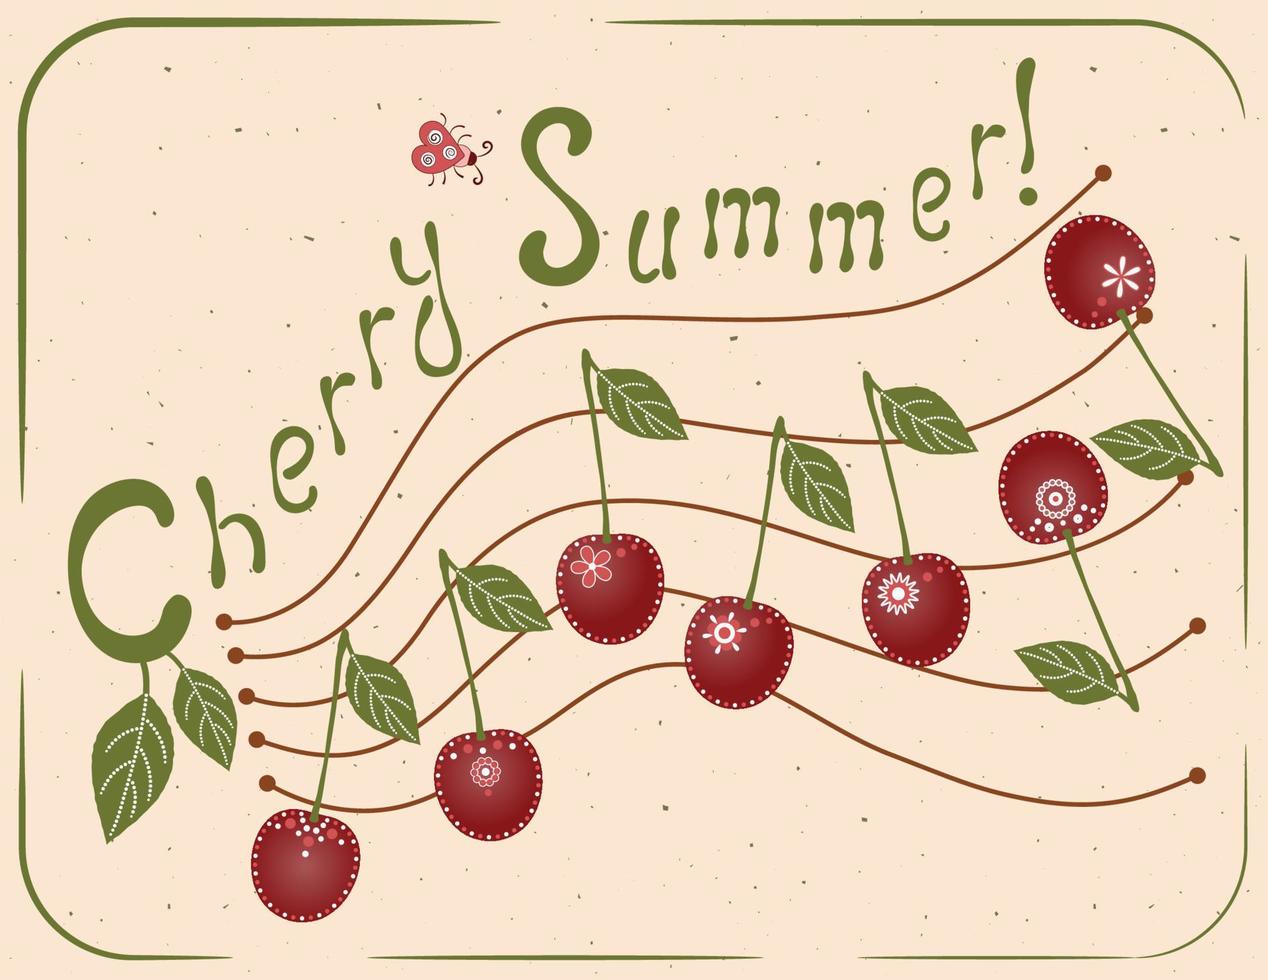 pauta com notas em forma de cerejas. cerejas são decoradas com vários pequenos padrões. cada fruto é desenhado com uma única folha e caule. ilustração em vetor alegre de verão. projeto de camiseta.